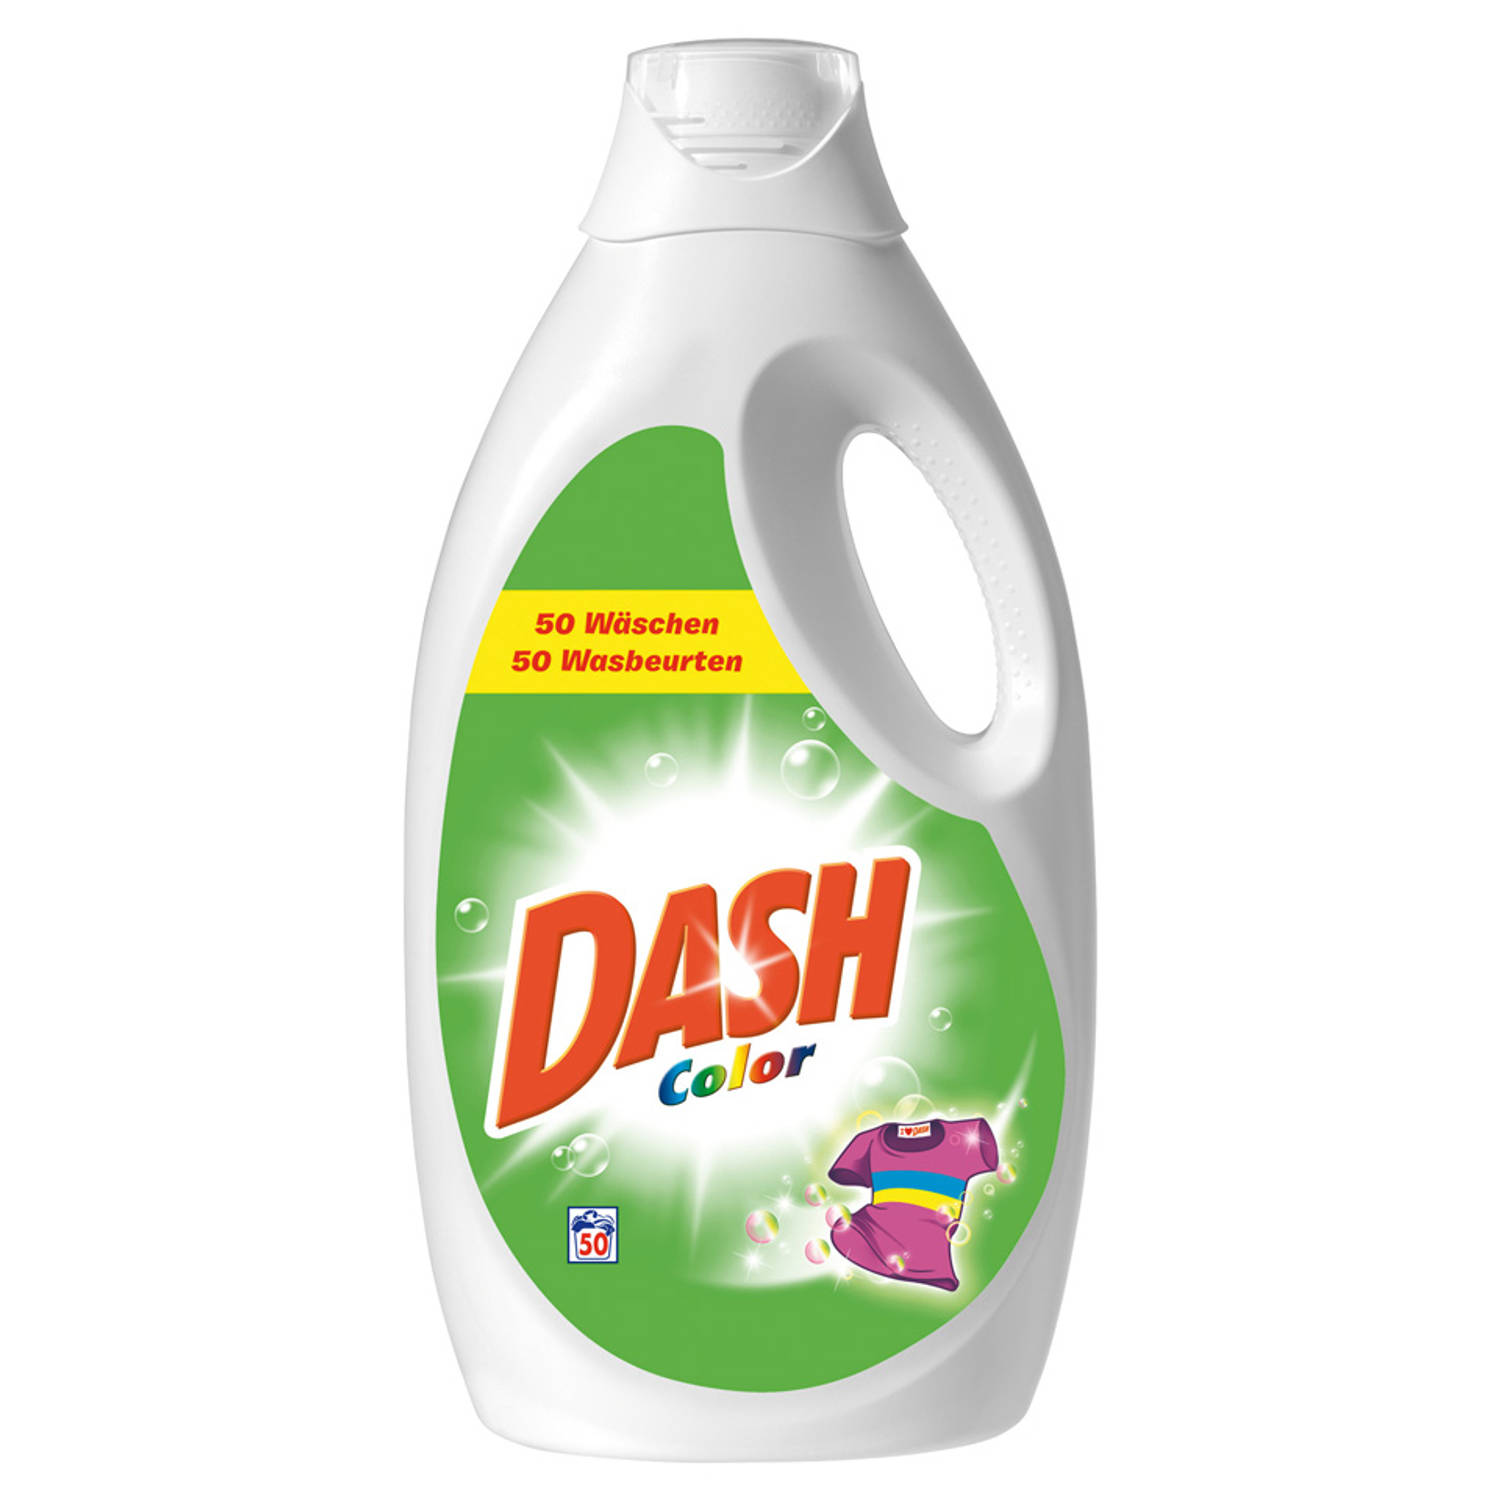 Zich verzetten tegen Gezond eten Tweede leerjaar Dash Color vloeibaar wasmiddel 50 wasbeurten | Blokker